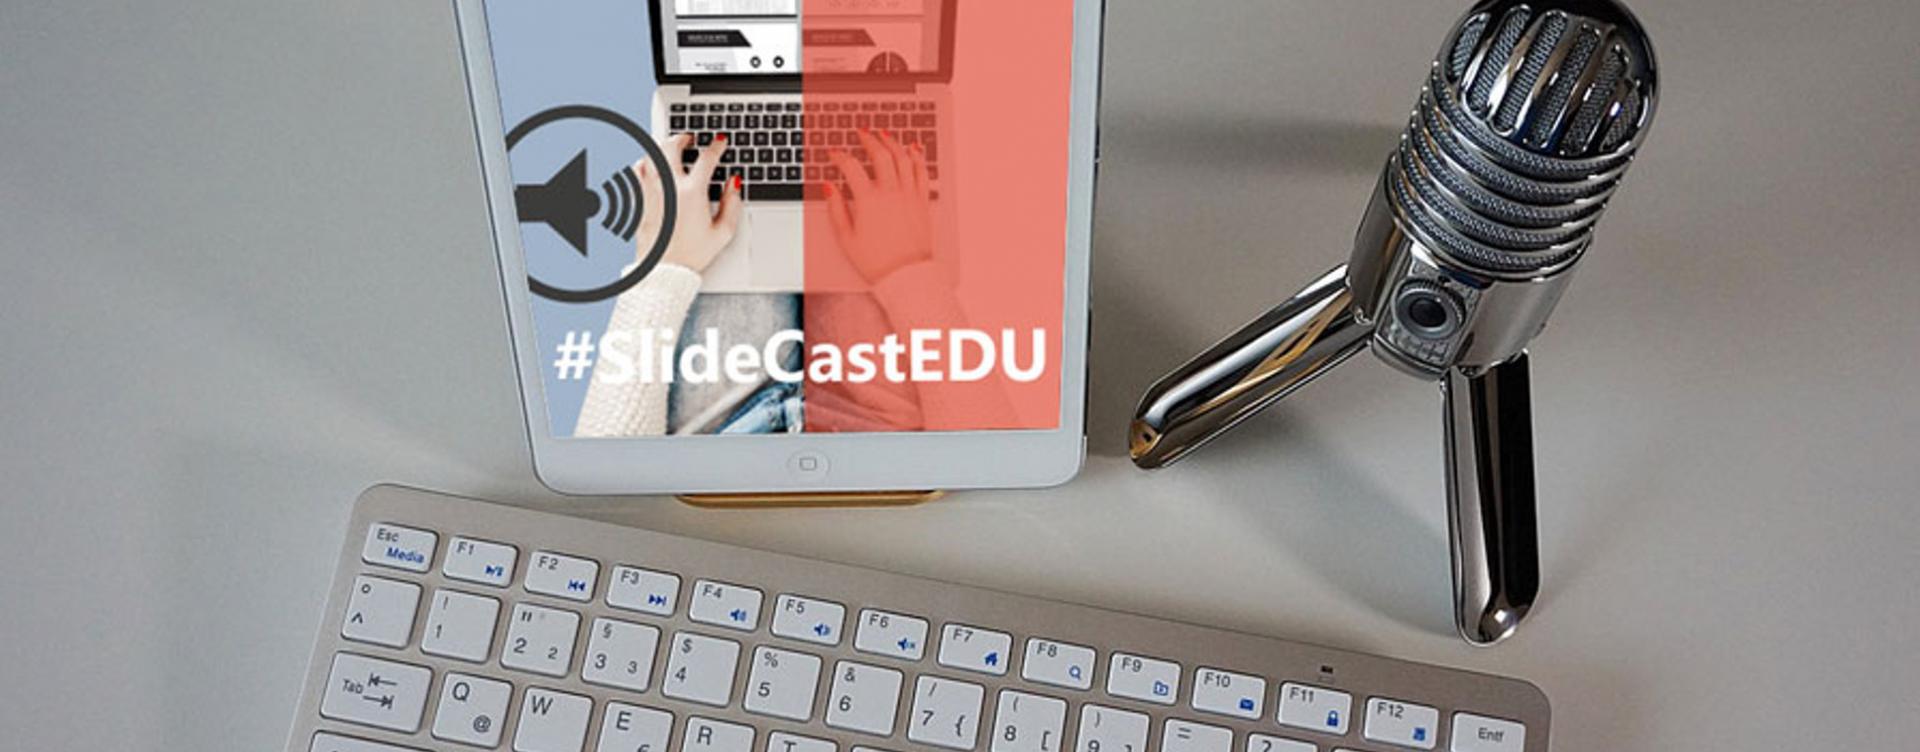 SlideCasting, una forma de hacer presentaciones digitales